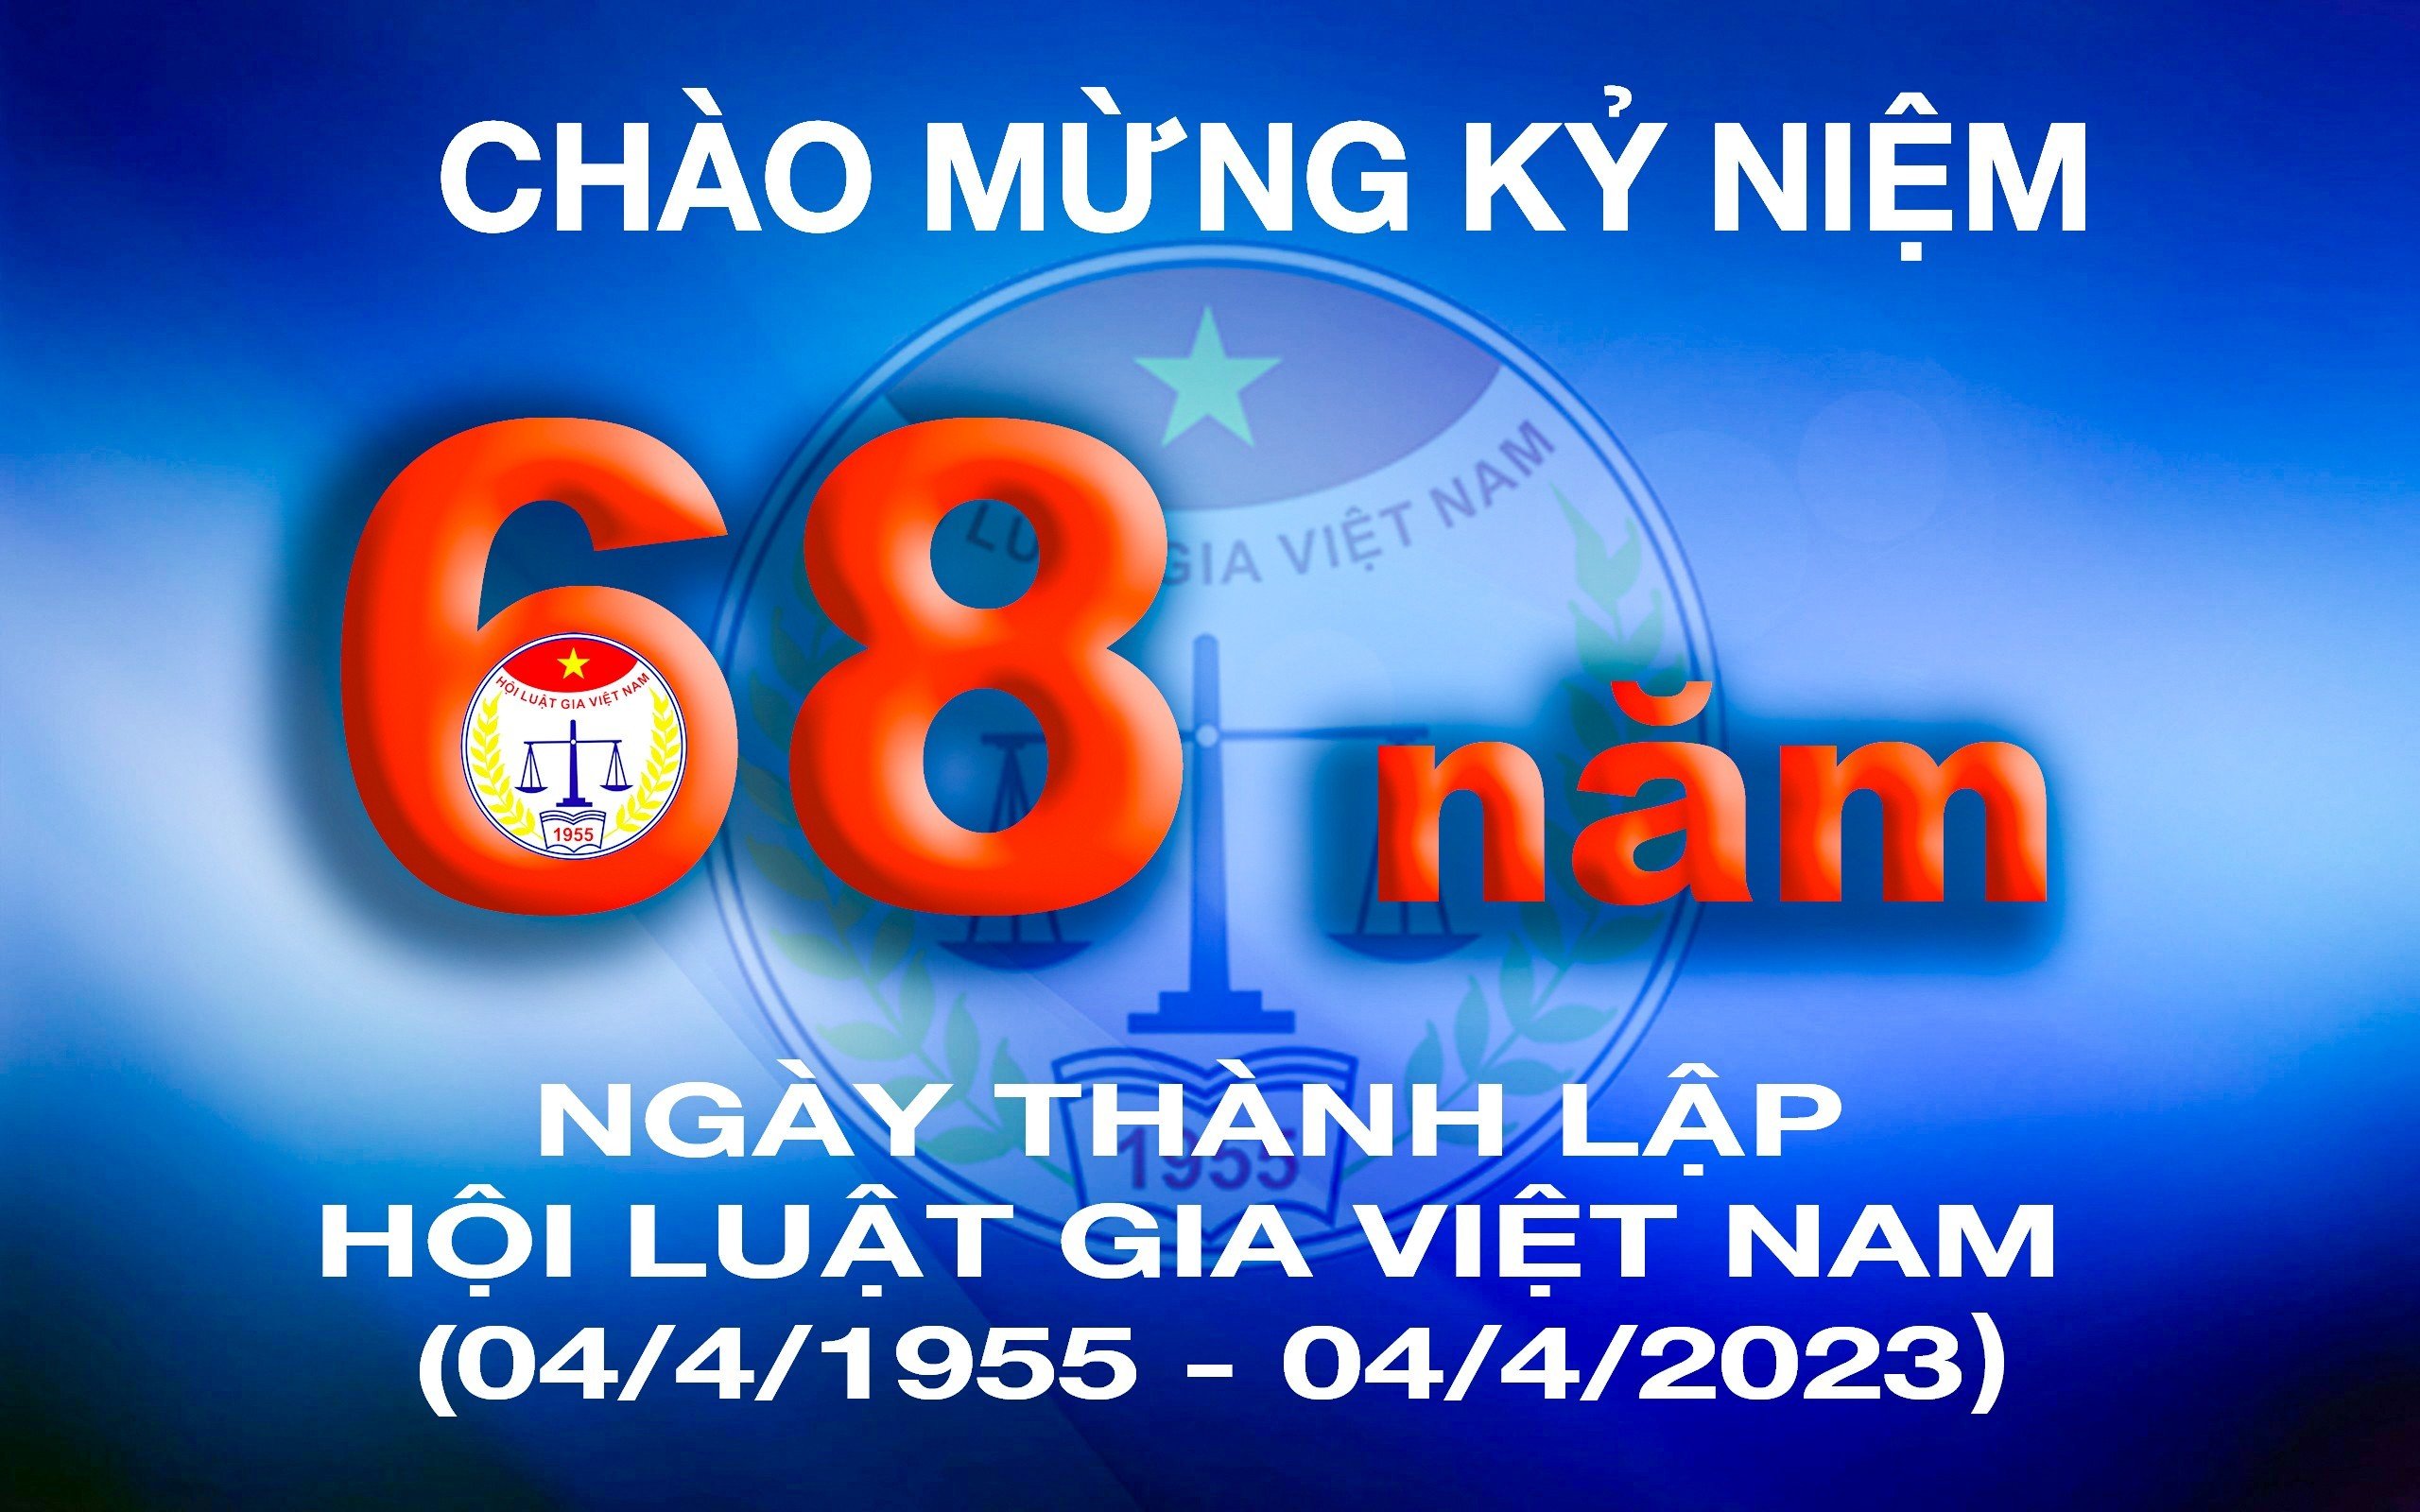 Thư của Bí thư Đảng đoàn, Chủ tịch Hội Luật gia Việt Nam gửi cán bộ, hội viên nhân dịp Kỷ niệm 68 năm Ngày thành lập Hội (04/4/1955 - 04/4/2023)